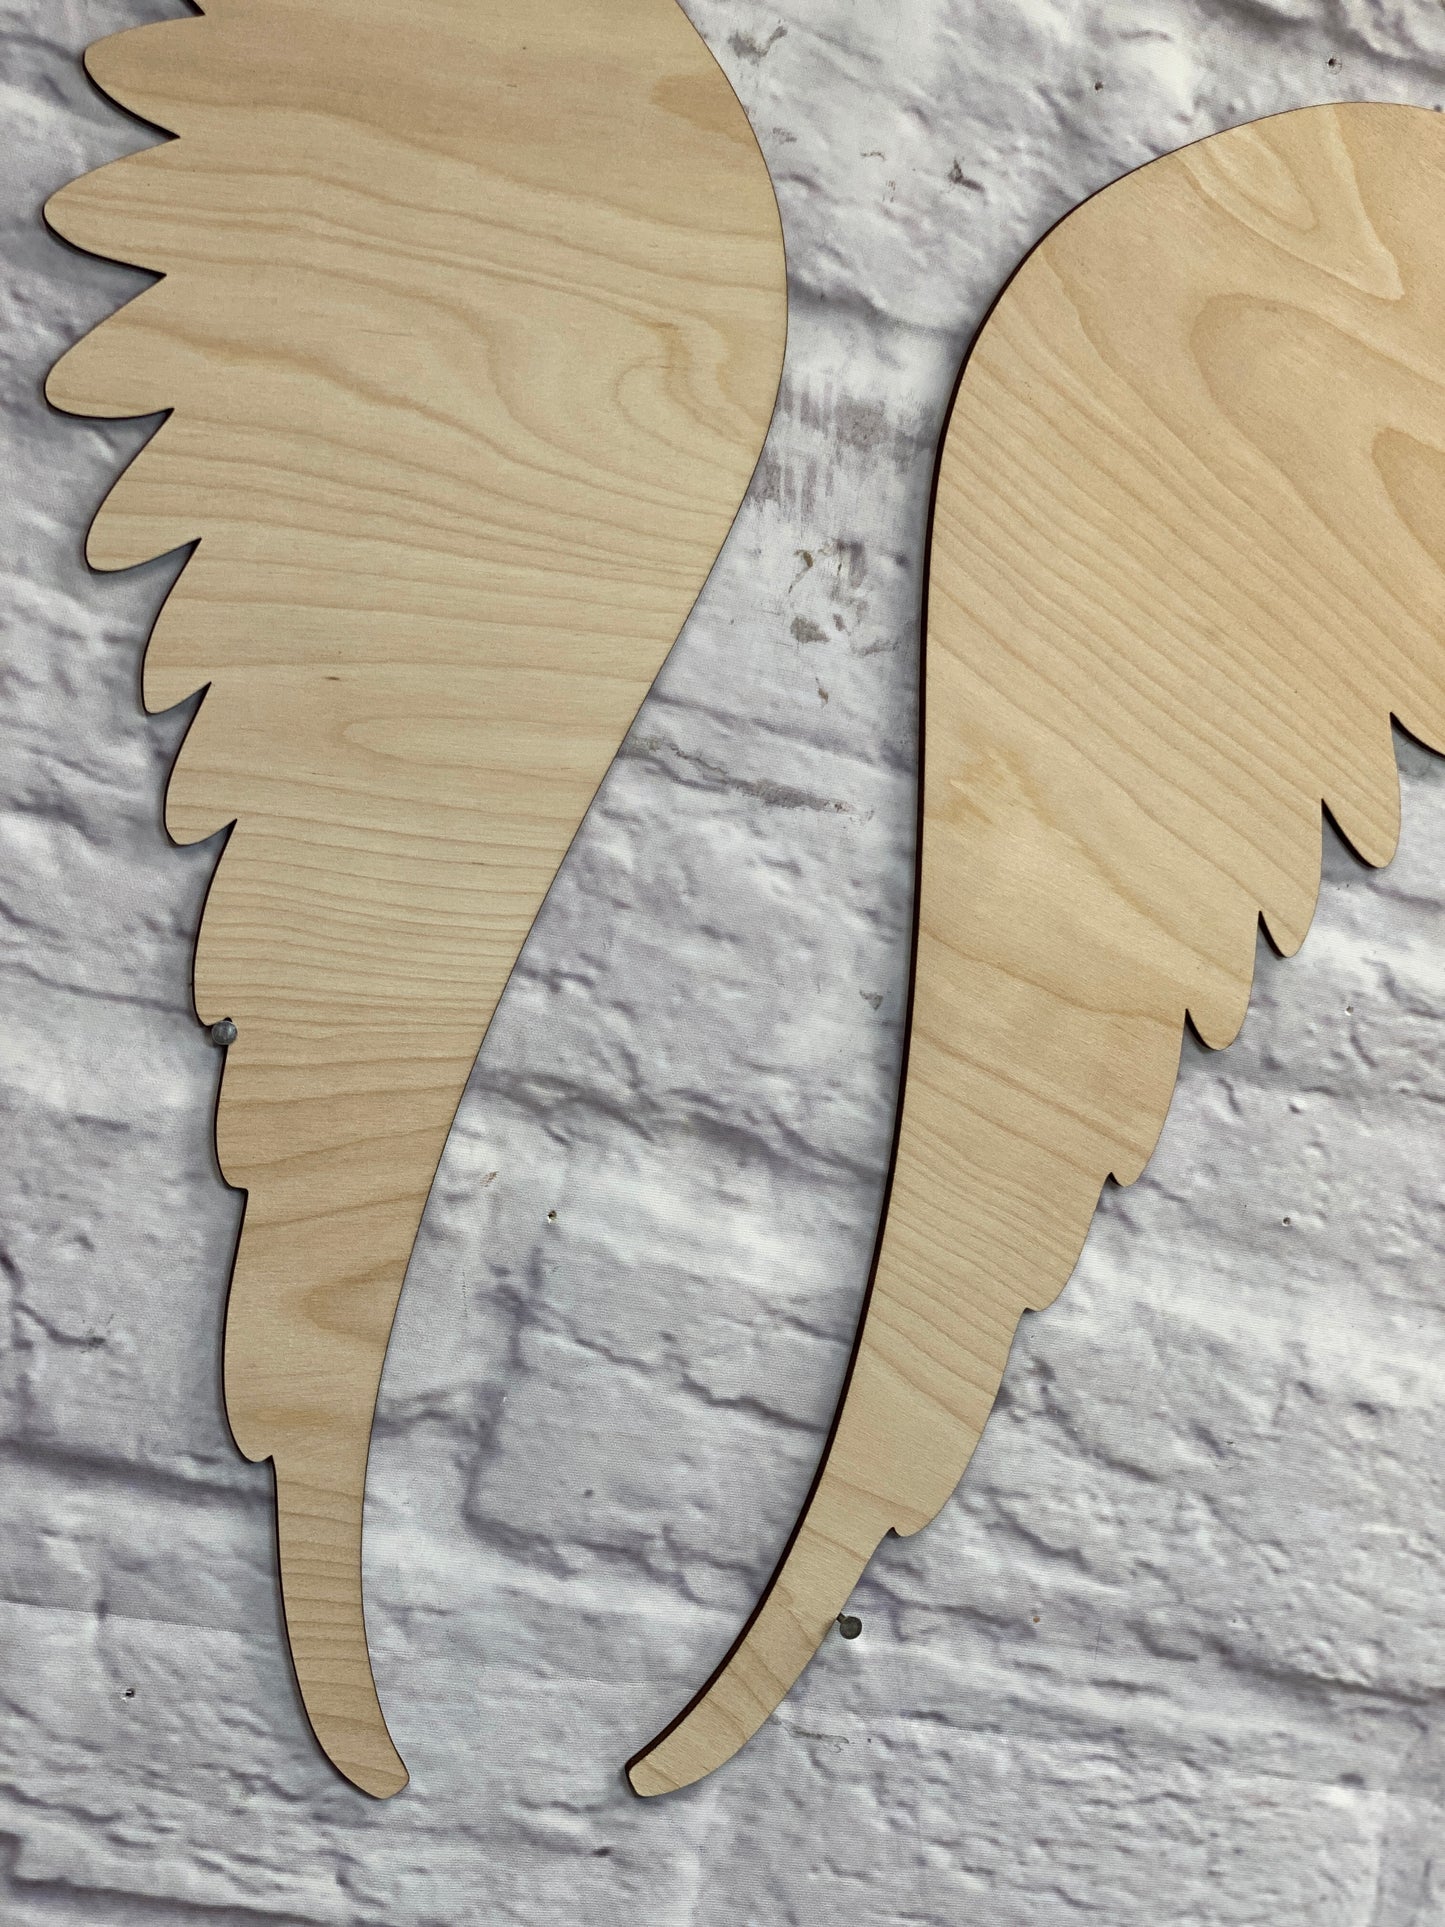 Angel Wings Wood Earring Blanks DIY Craft Earrings Laser Cut